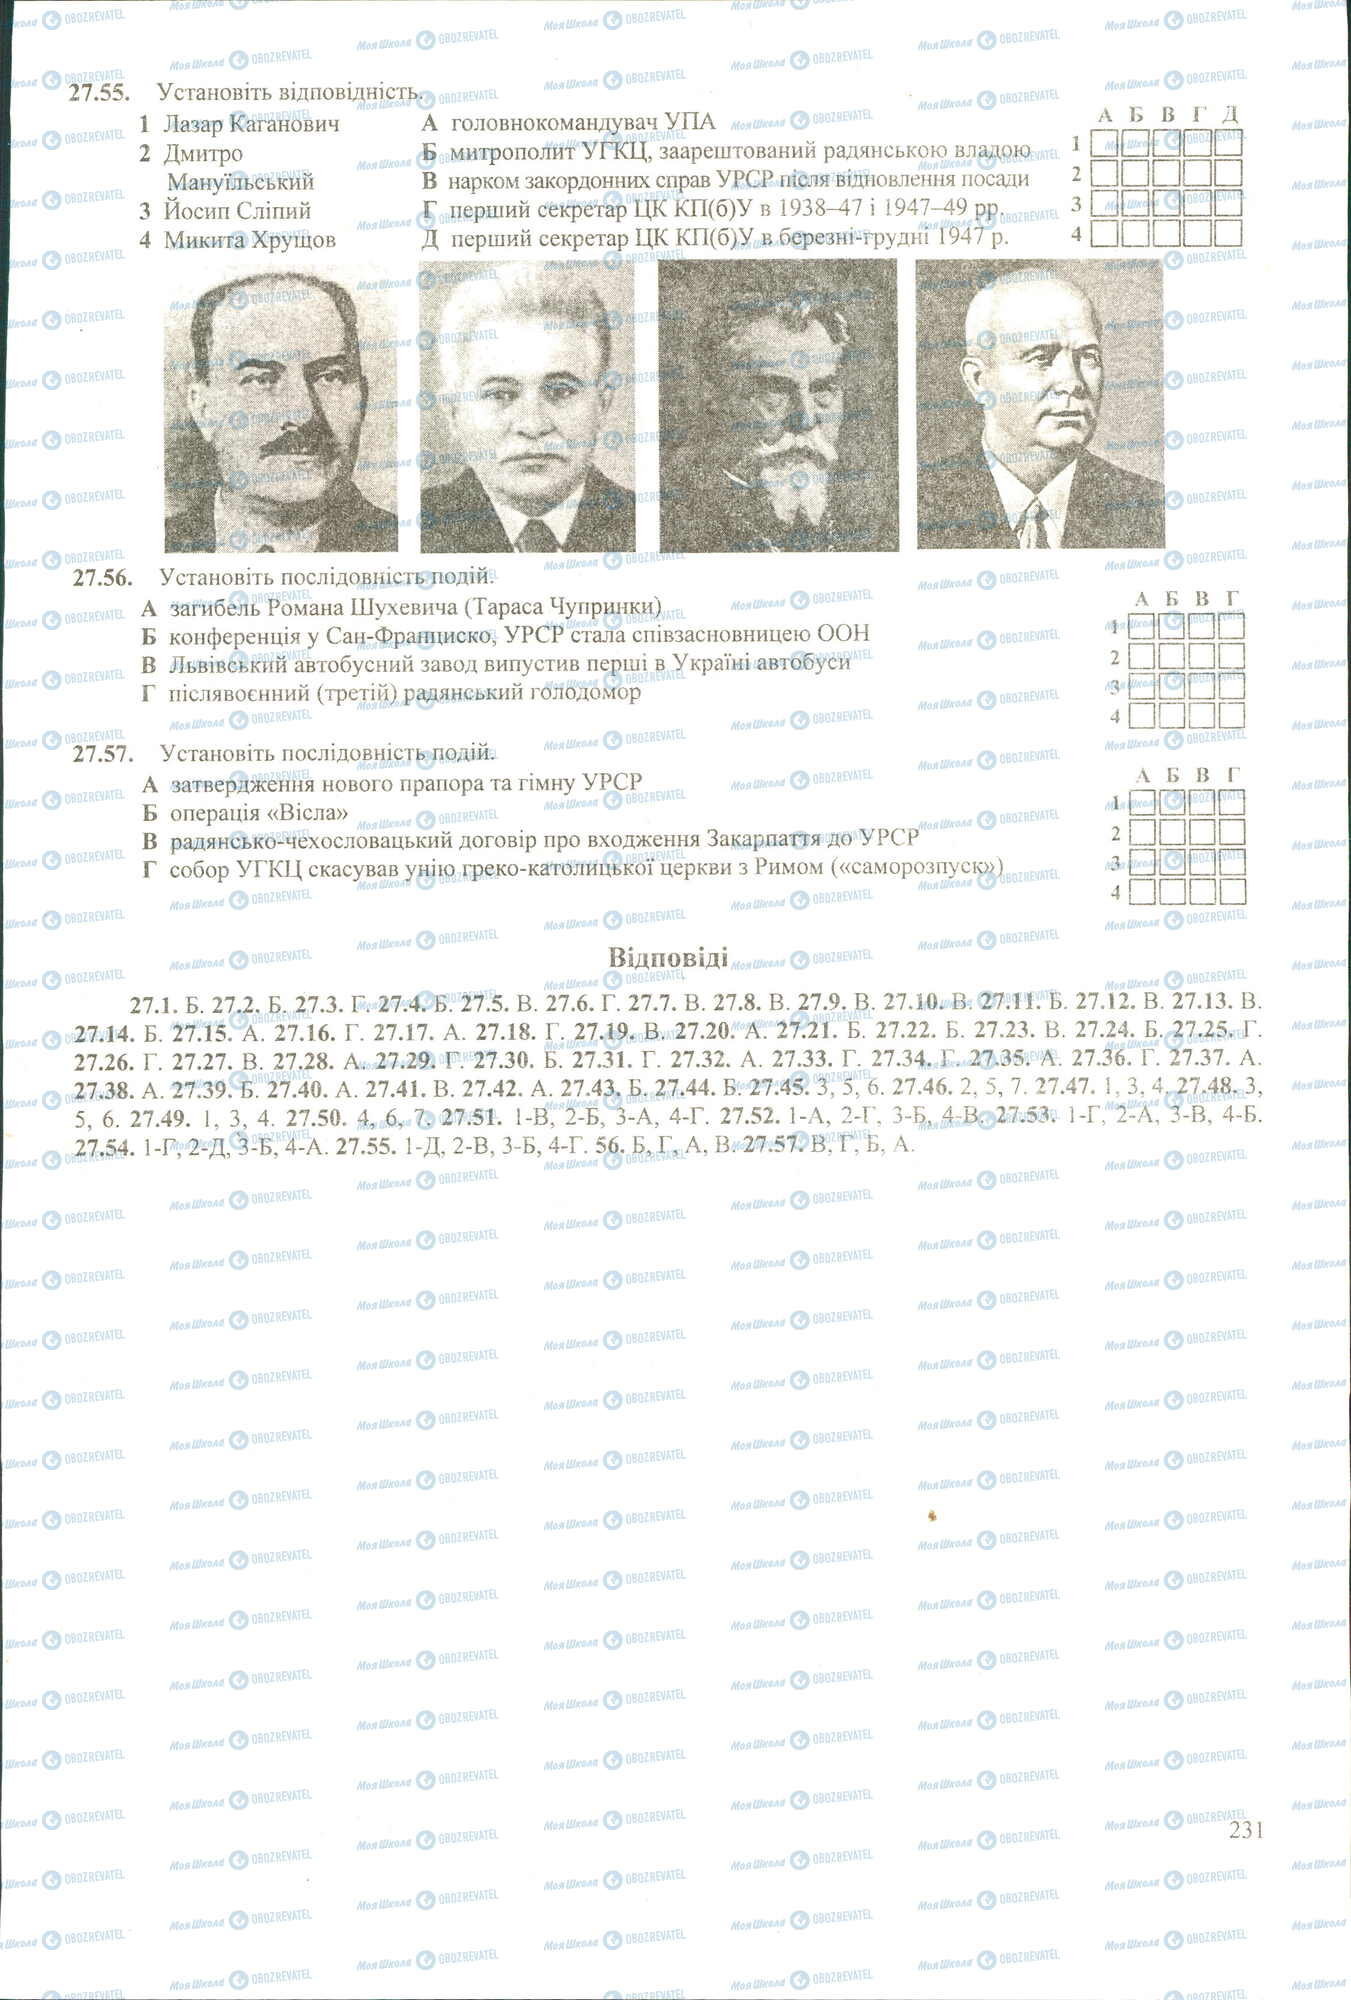 ЗНО История Украины 11 класс страница 55-57